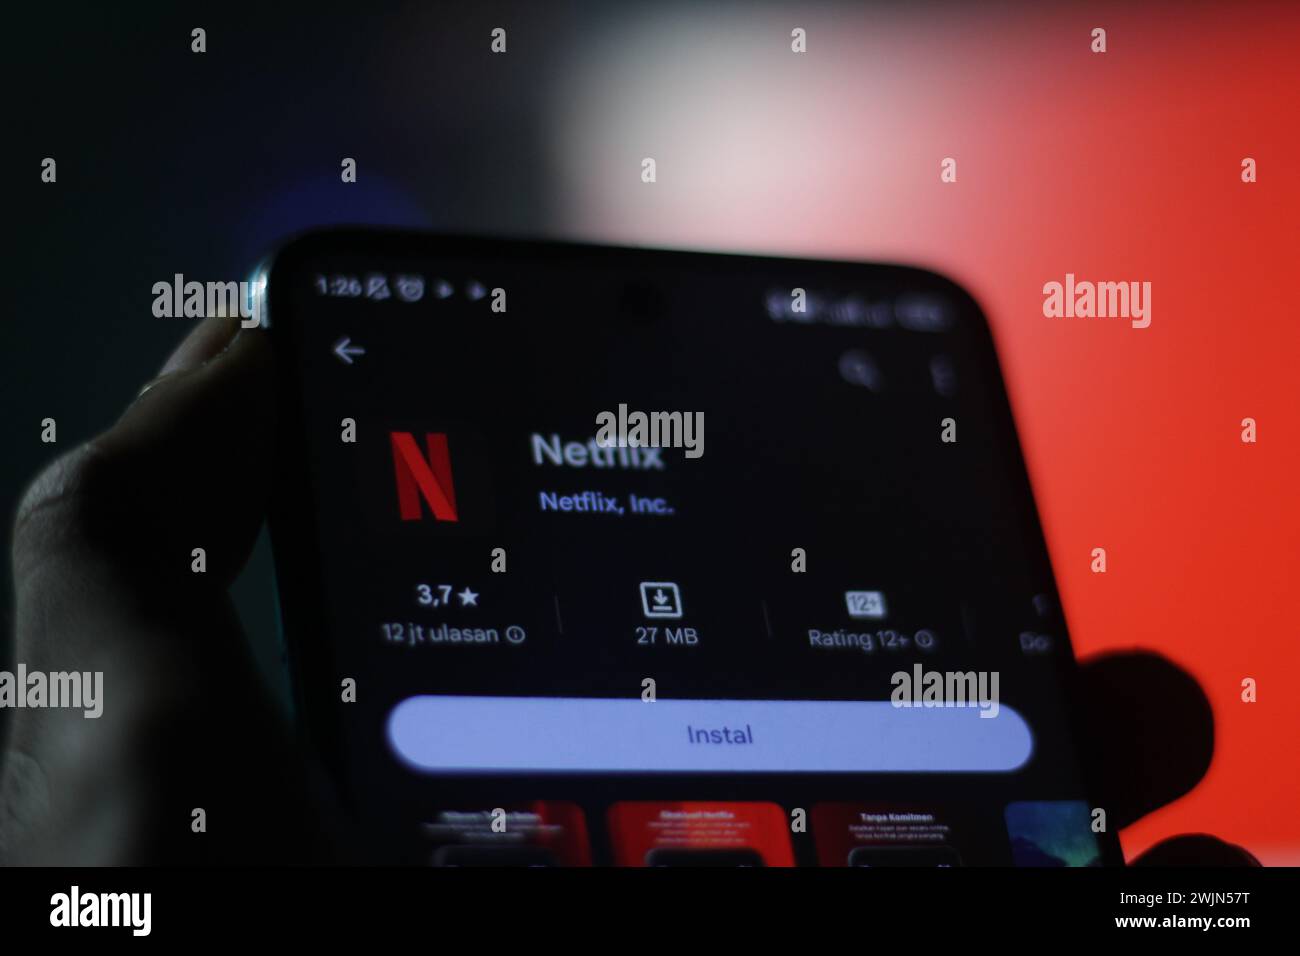 Una mano di un uomo tiene un cellulare con il logo Netflix sullo schermo del cellulare. schermata di messa a fuoco selettiva dell'app appstore. Editoriale illustrativo Foto Stock